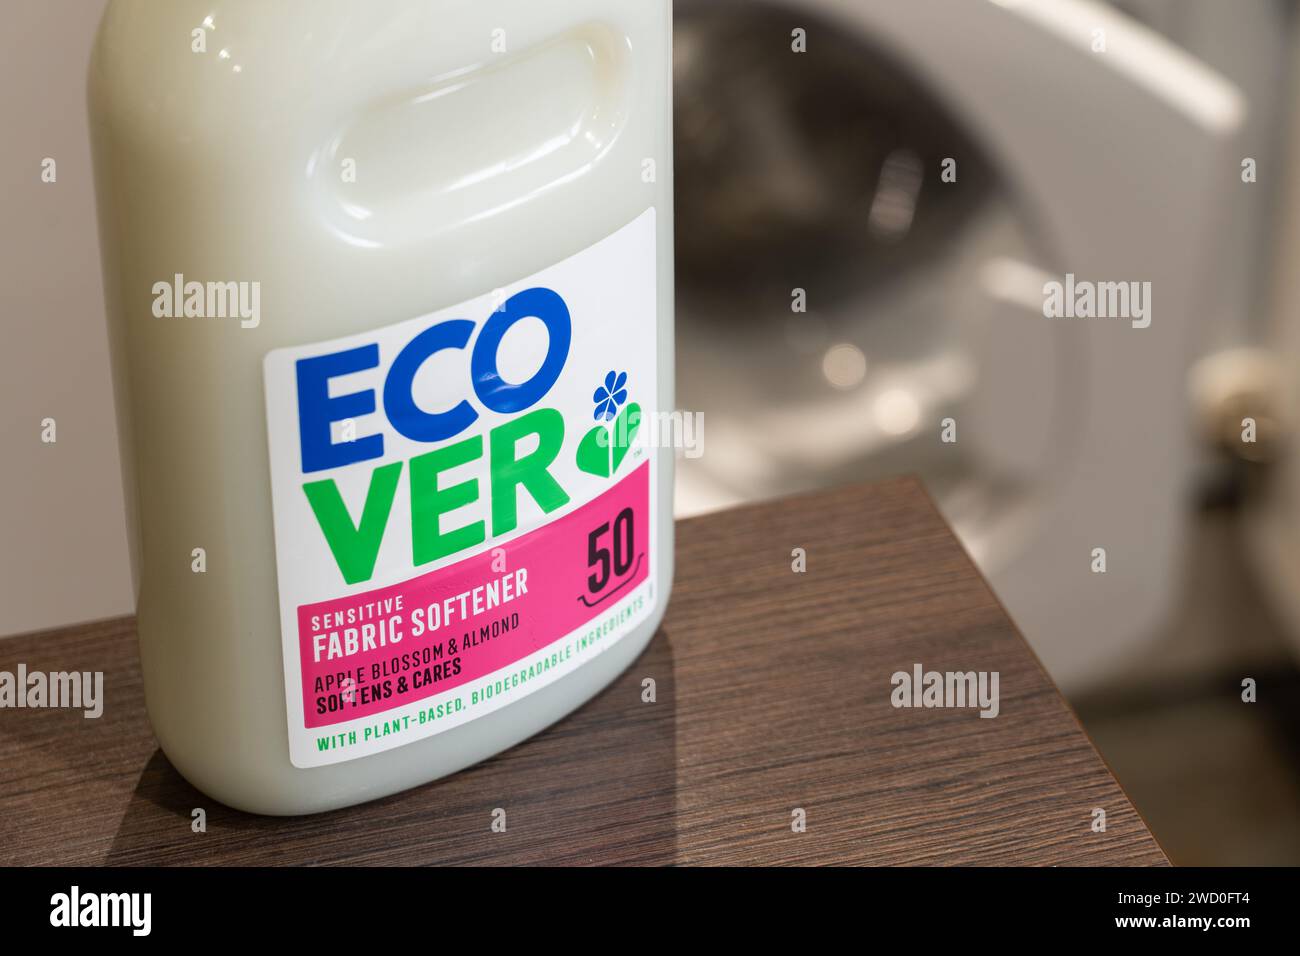 Addolcitore per tessuti con ingredienti biodegradabili a base vegetale di Ecover, un'azienda belga che produce prodotti per la pulizia ecologicamente sani. REGNO UNITO Foto Stock